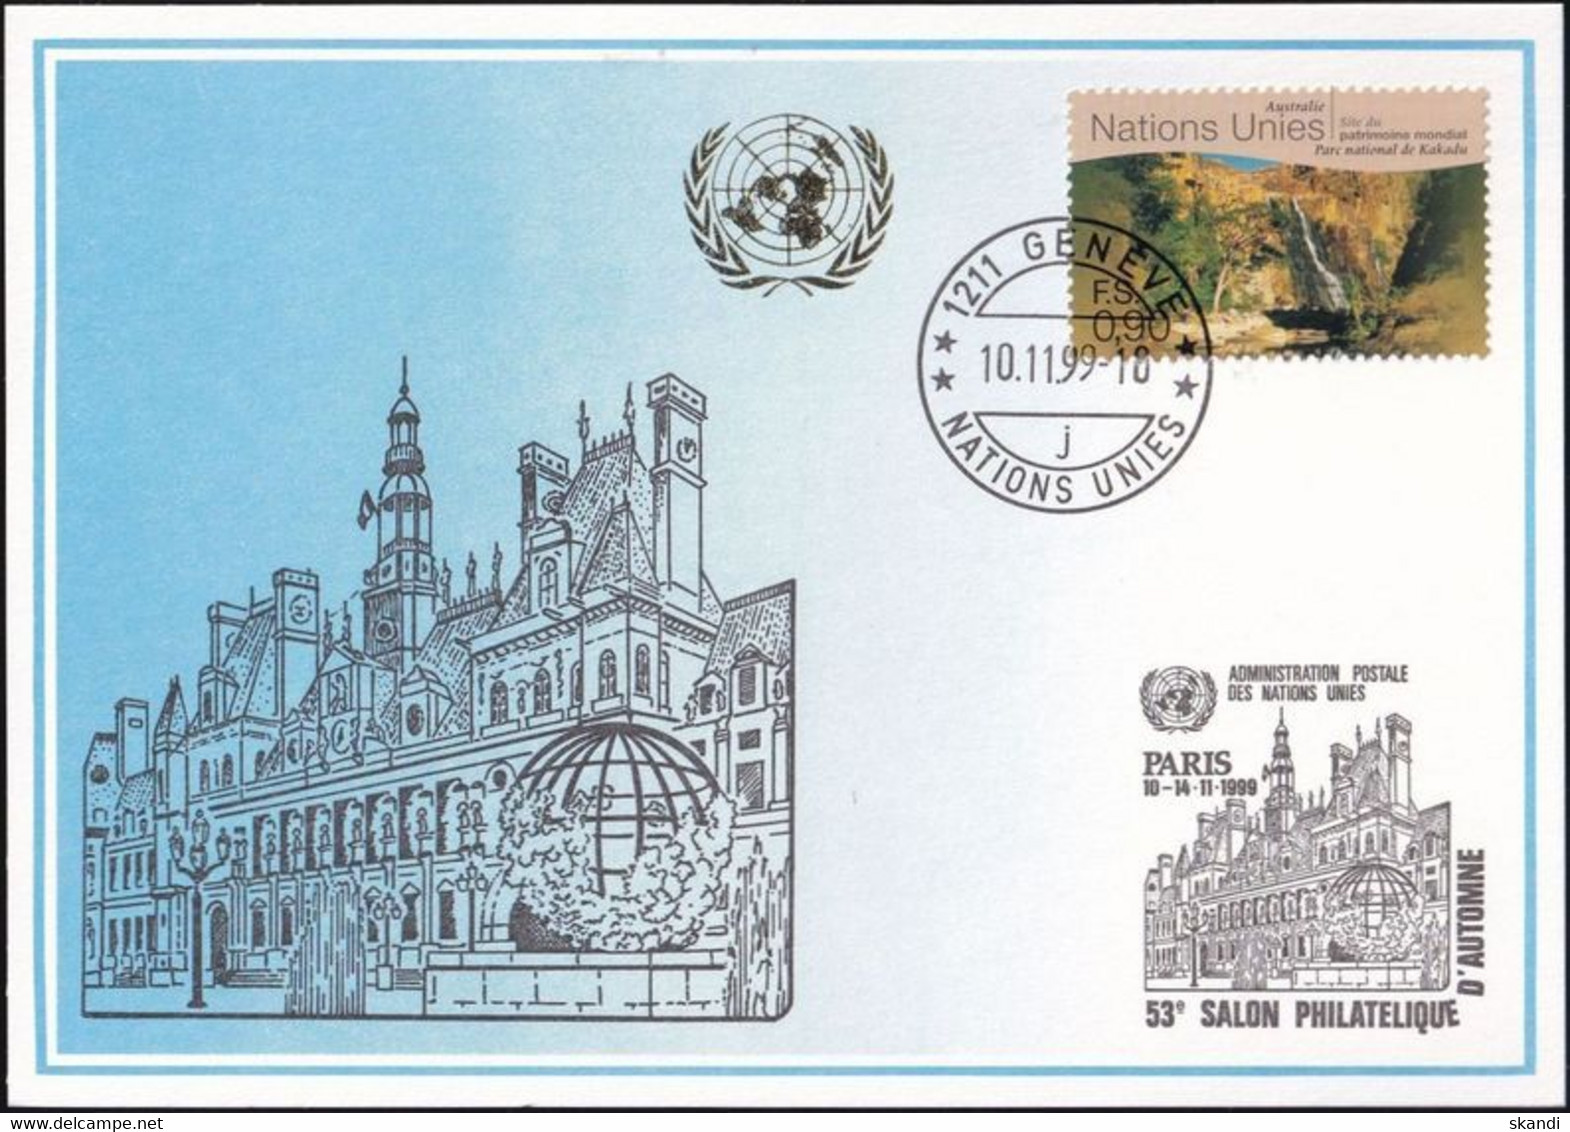 UNO GENF 1999 Mi-Nr. 305 Blaue Karte - Blue Card  Mit Erinnerungsstempel PARIS - Briefe U. Dokumente